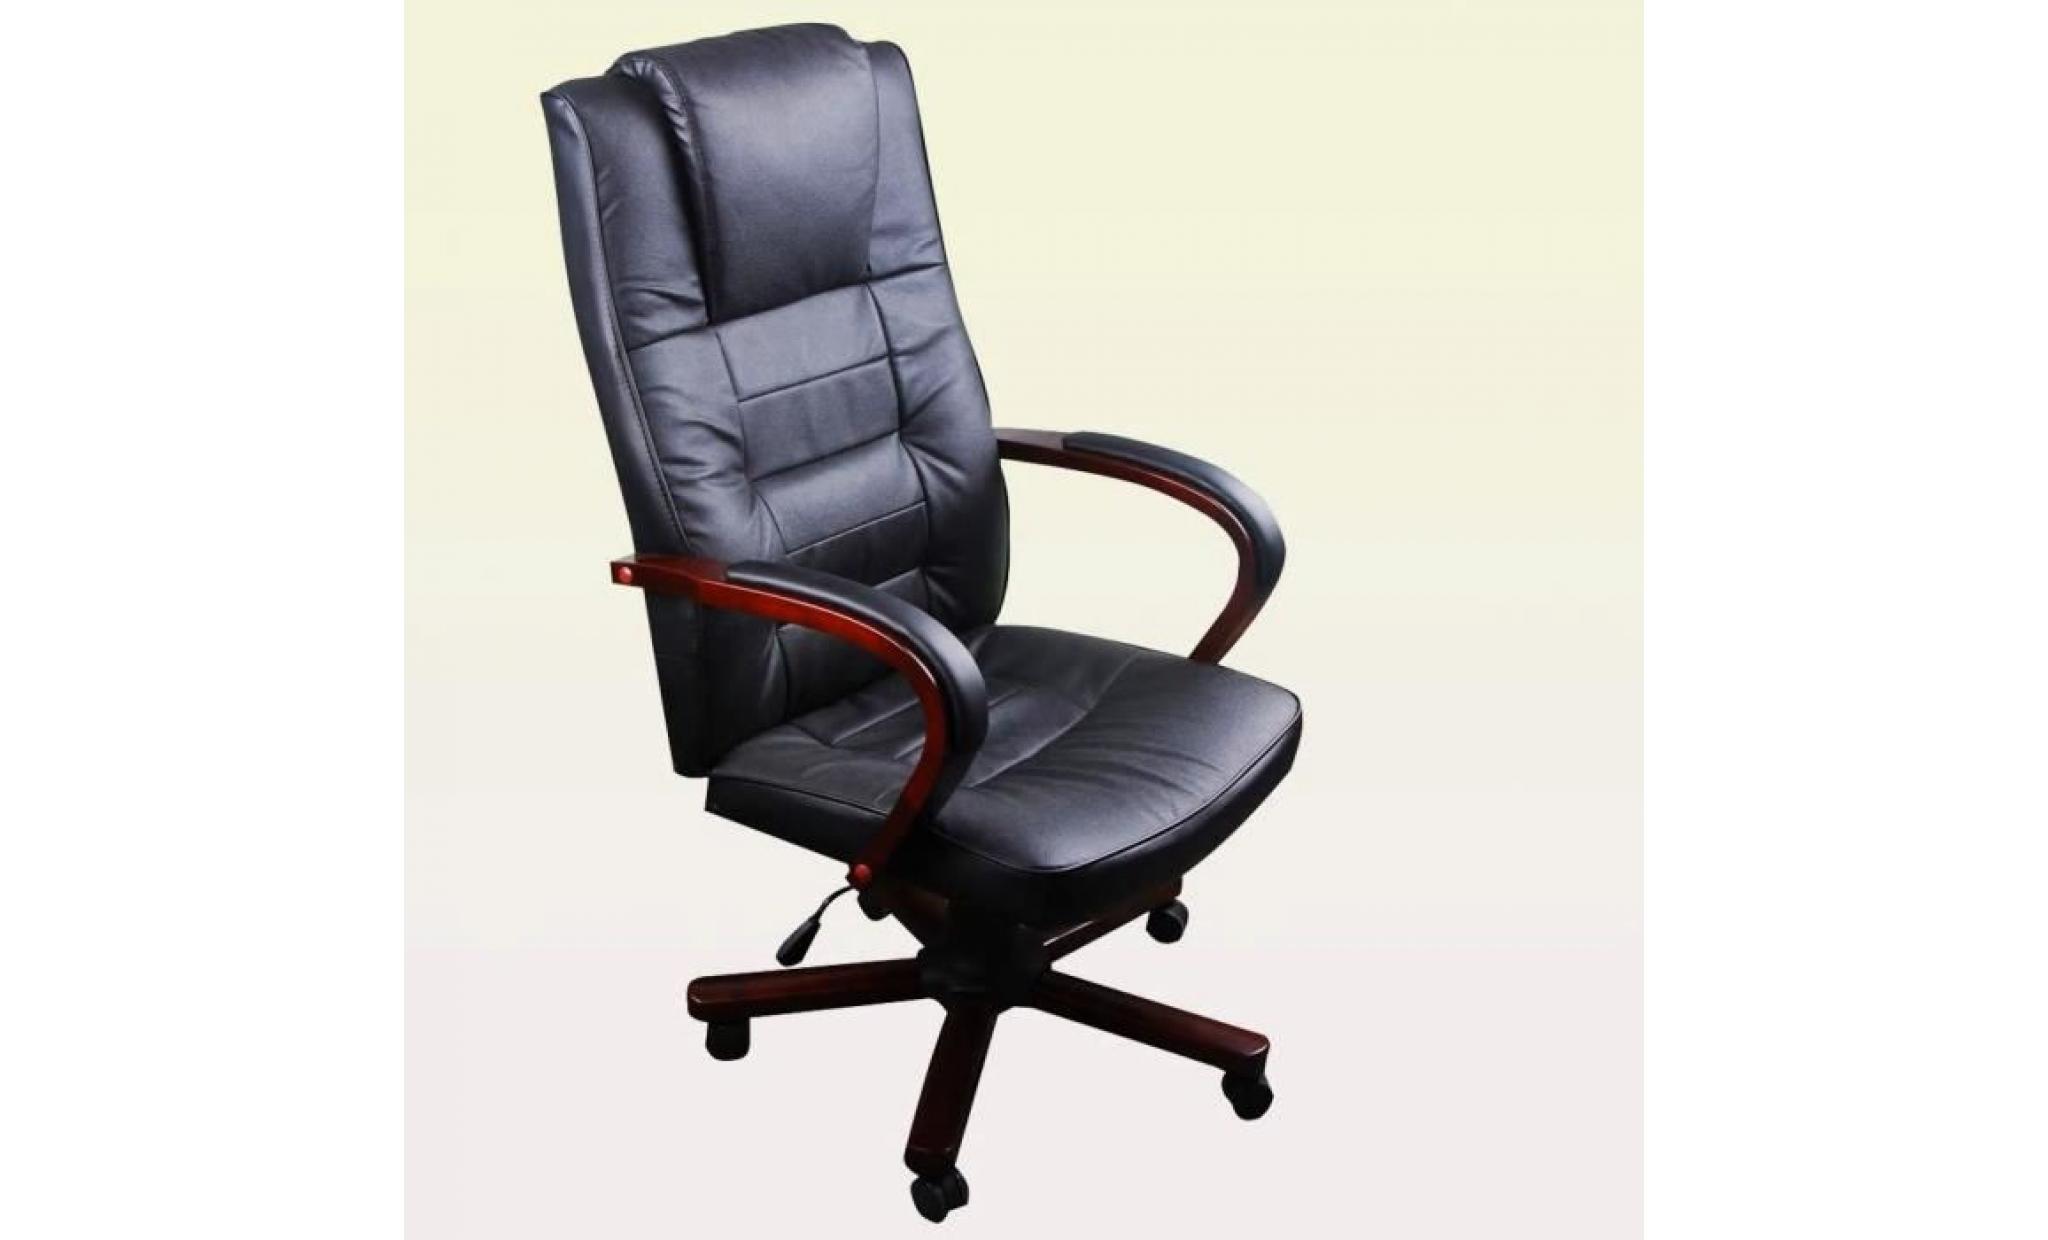 r164 fauteuil de bureau en cuir melange noir au design ergonomique avec accoudoirs en bois, habilles d'un rembourrage en